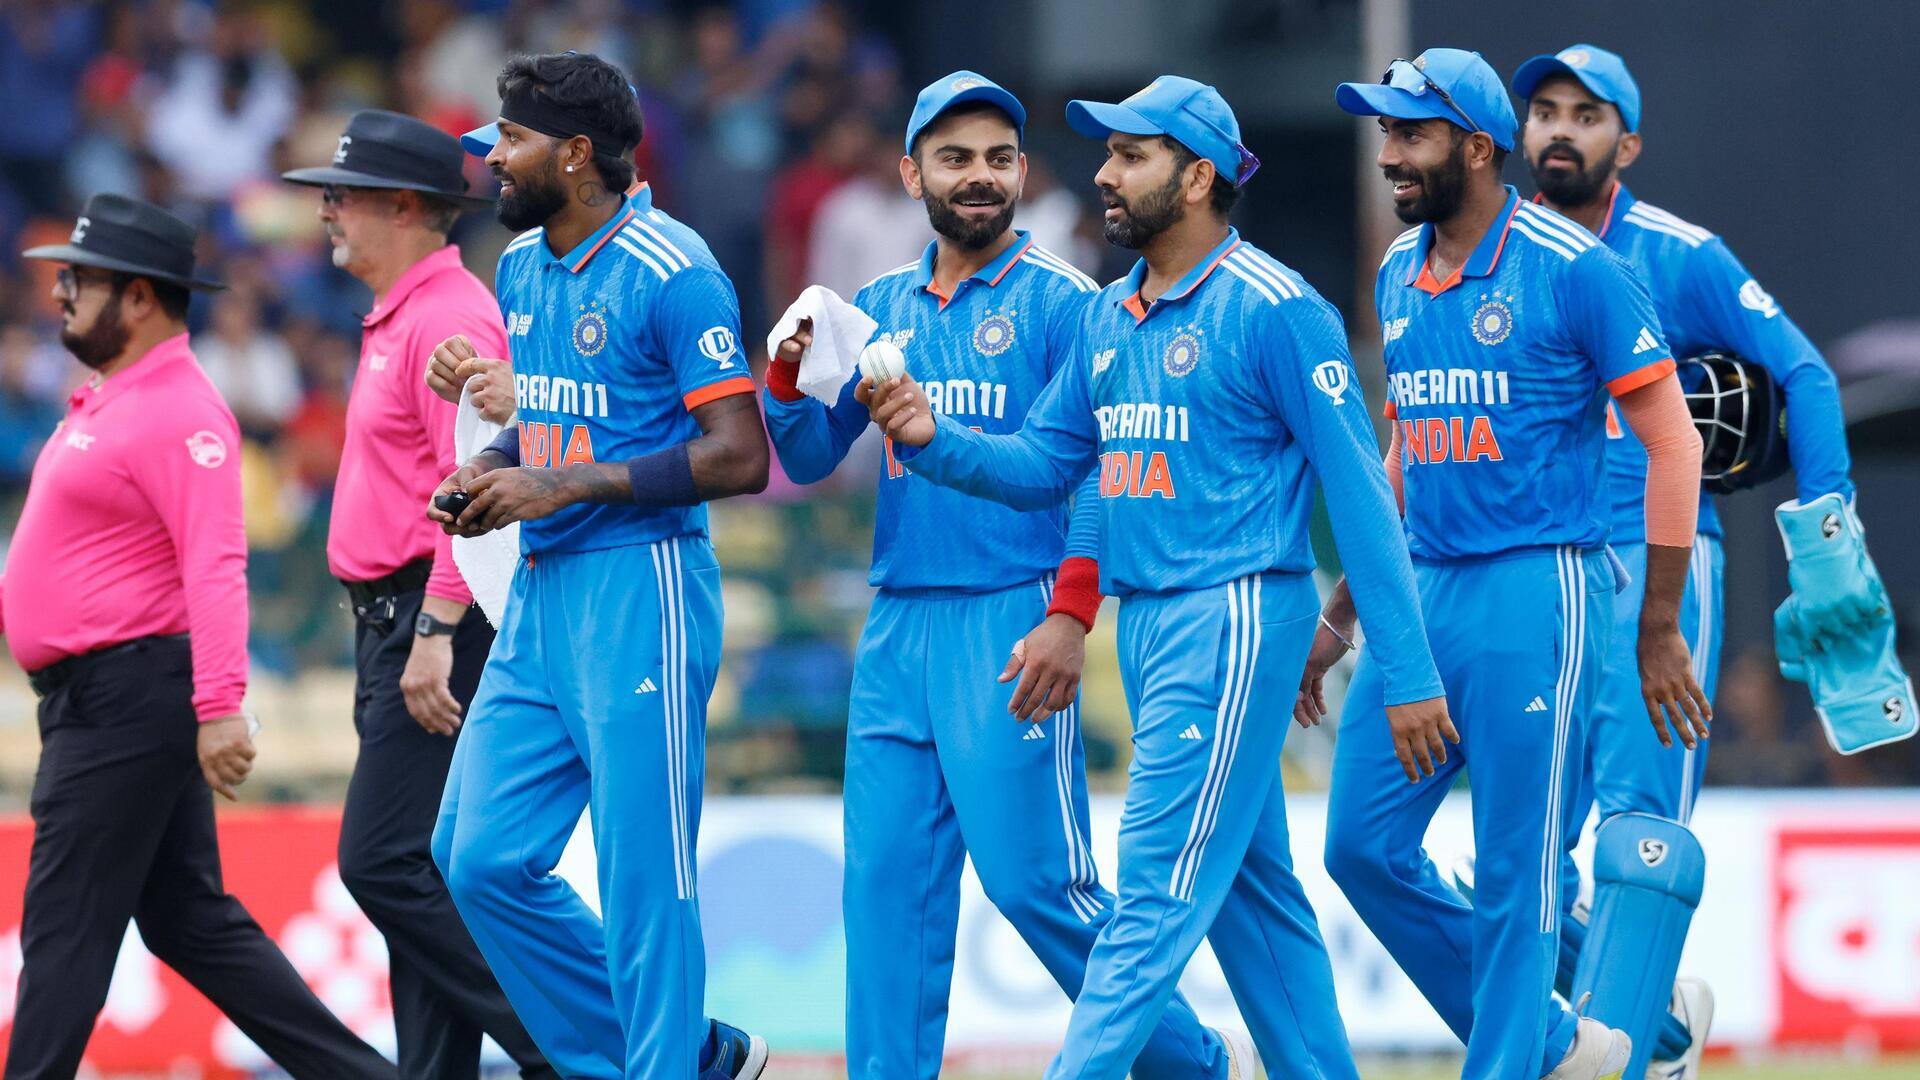 ऑस्ट्रेलिया के खिलाफ वनडे सीरीज में इन भारतीय खिलाड़ियों को मिल सकता है आराम